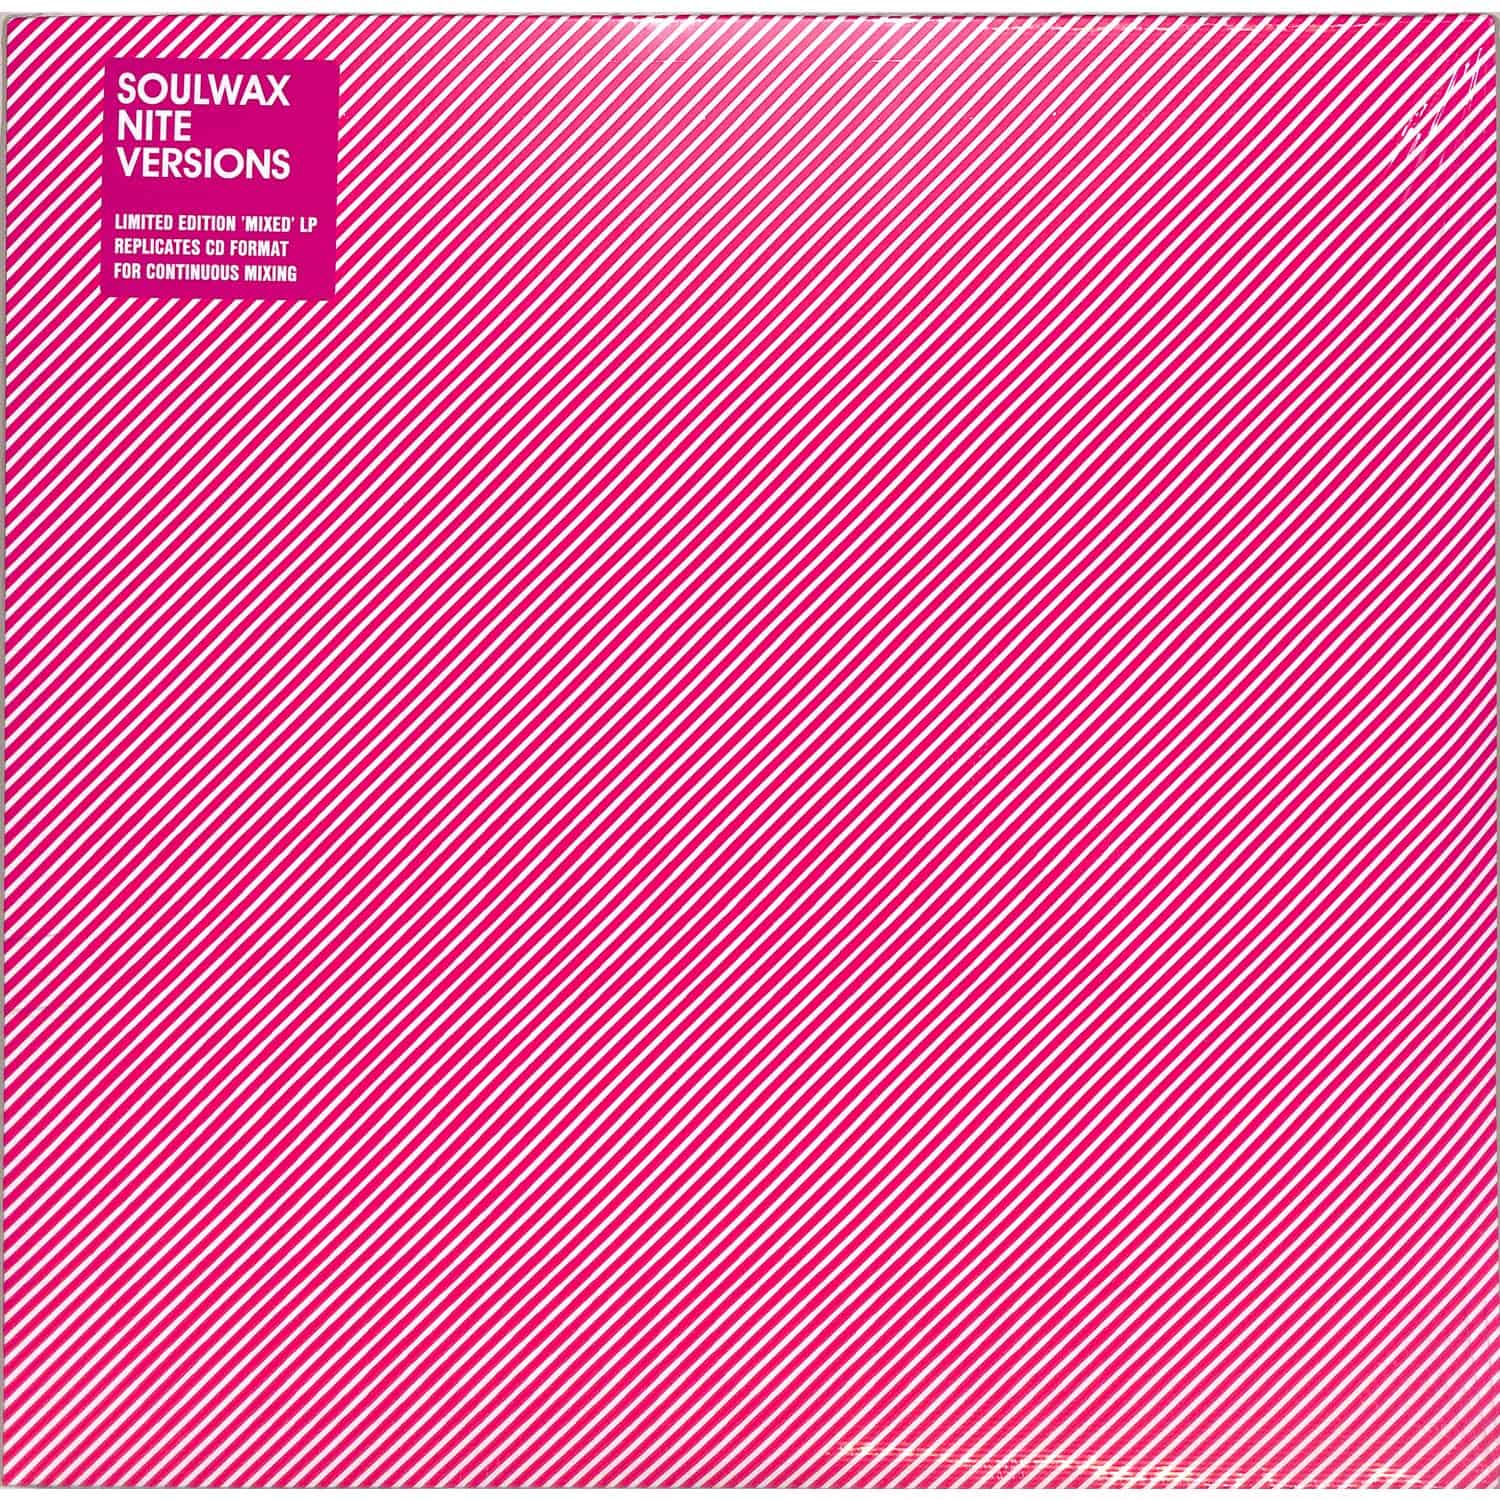 Soulwax - NITE VERSIONS 